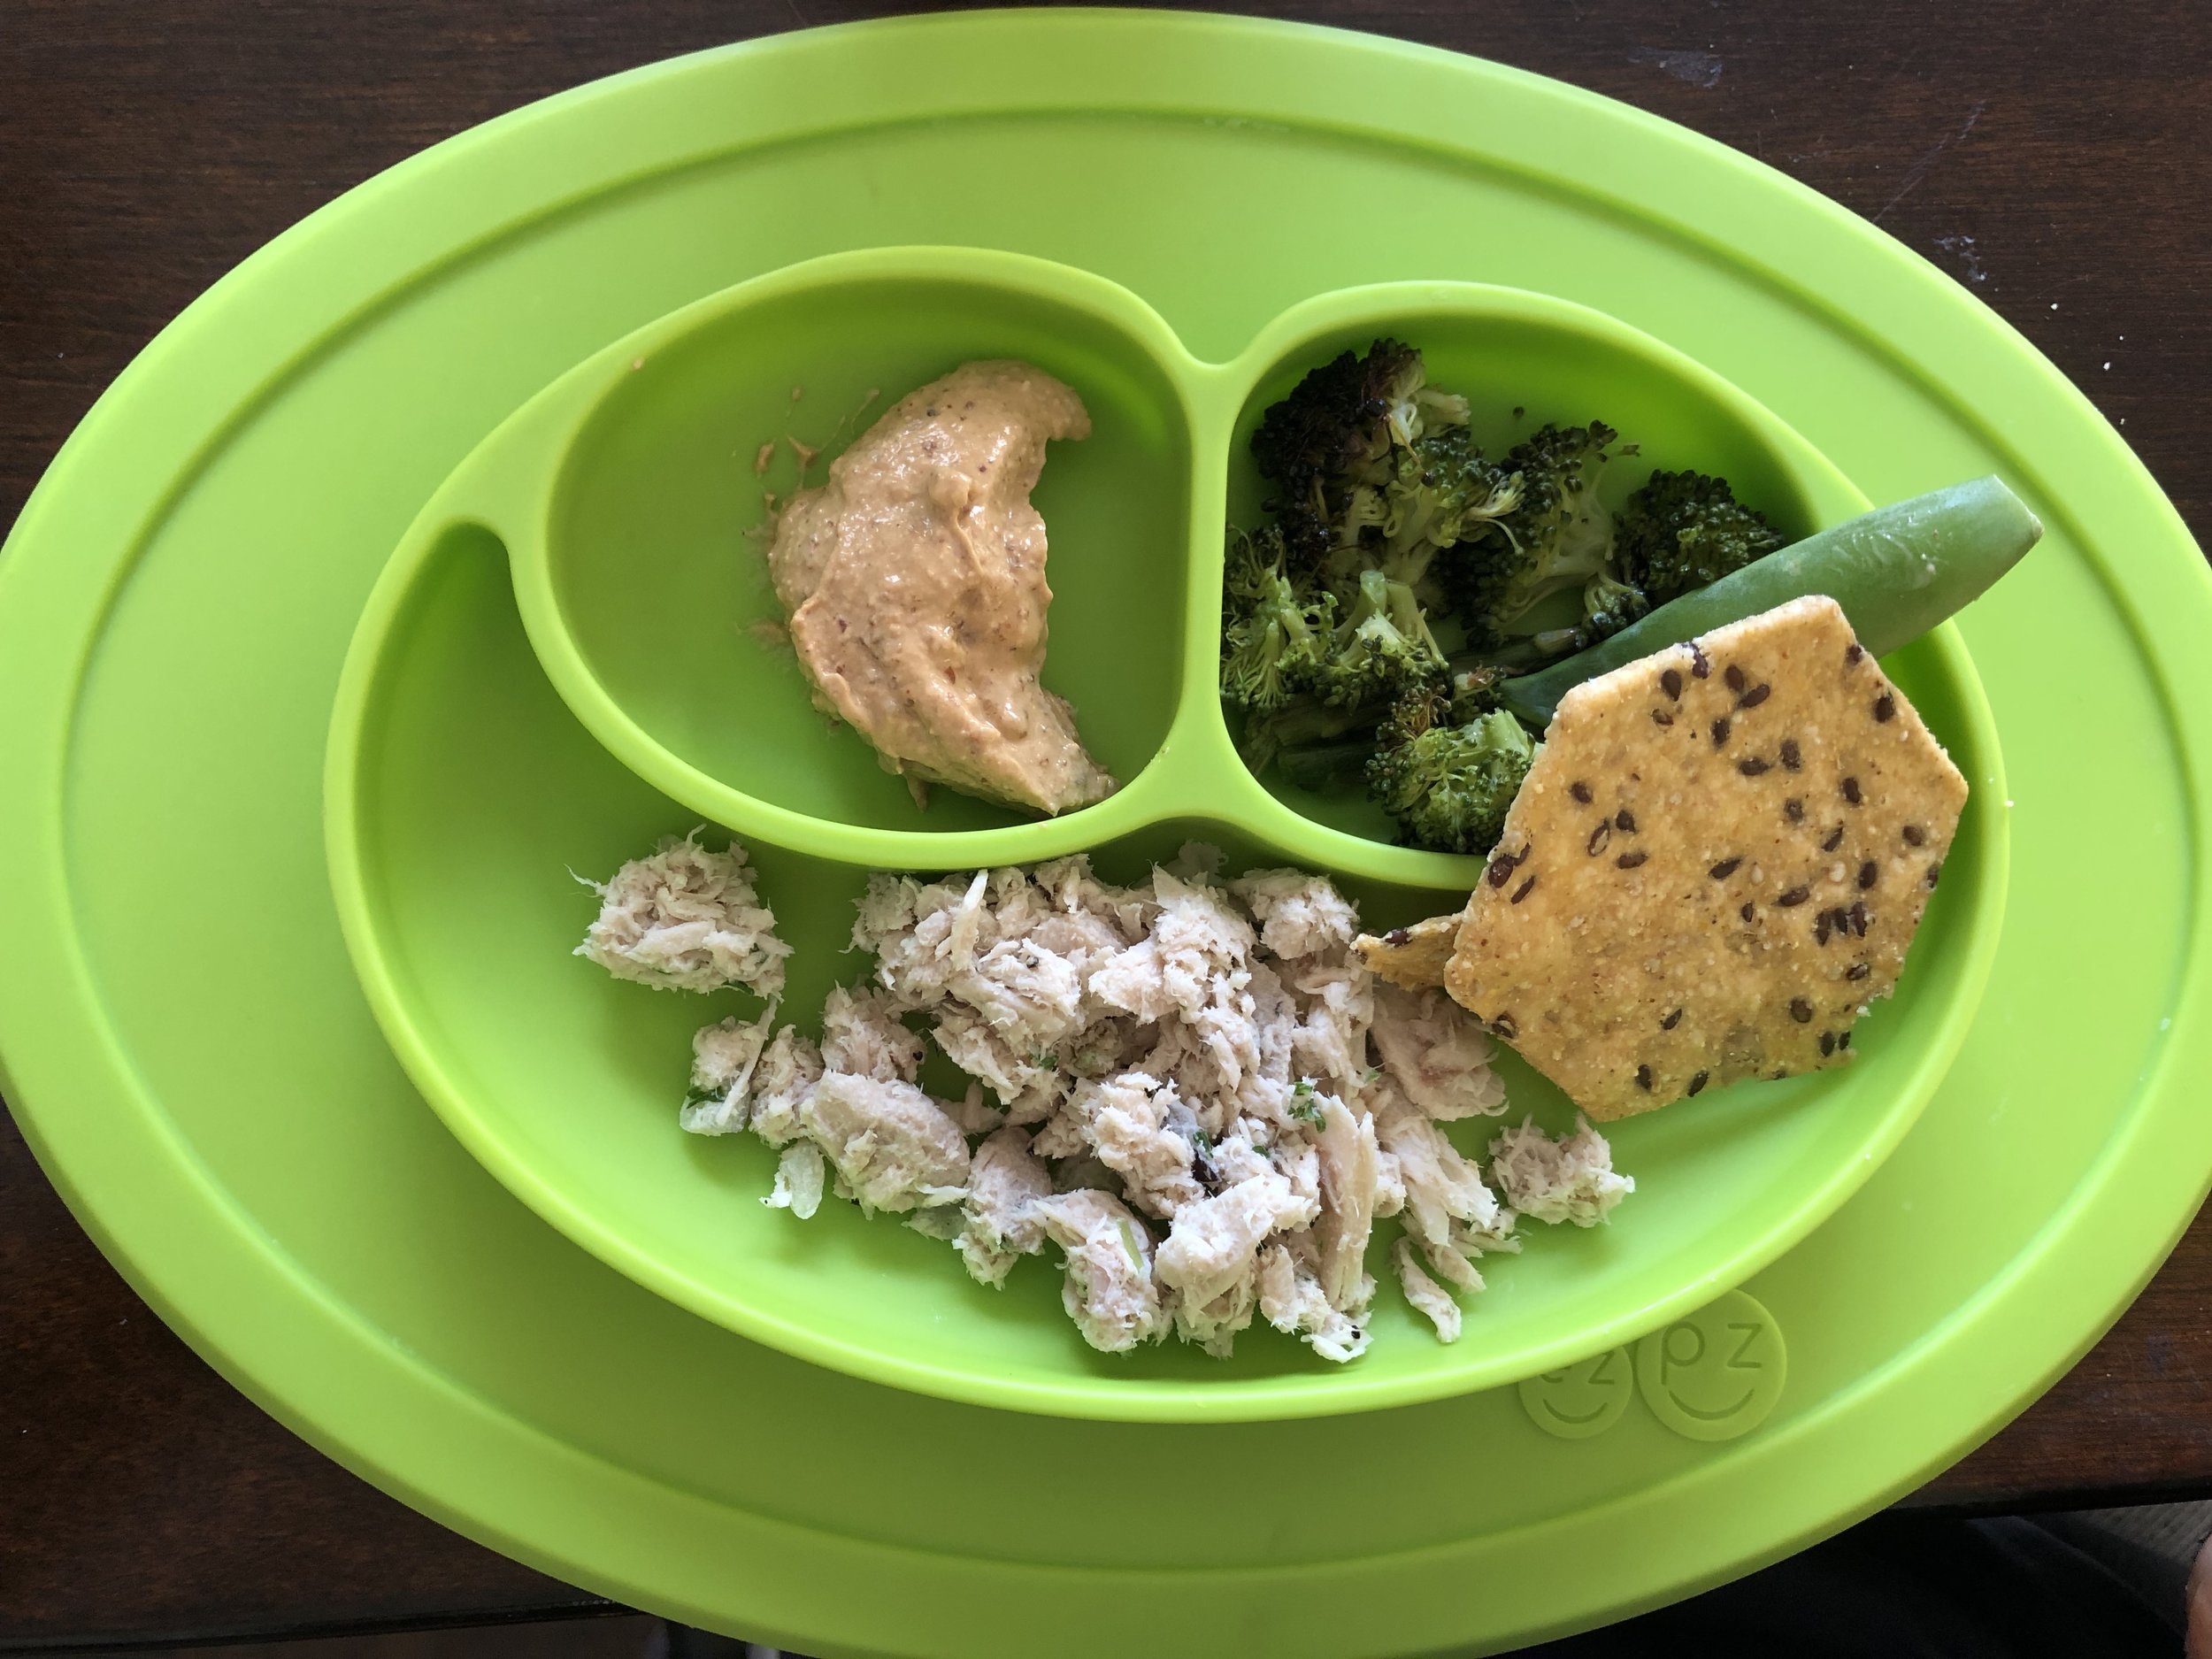 tuna salad, bitchin sauce, broccoli and crackers